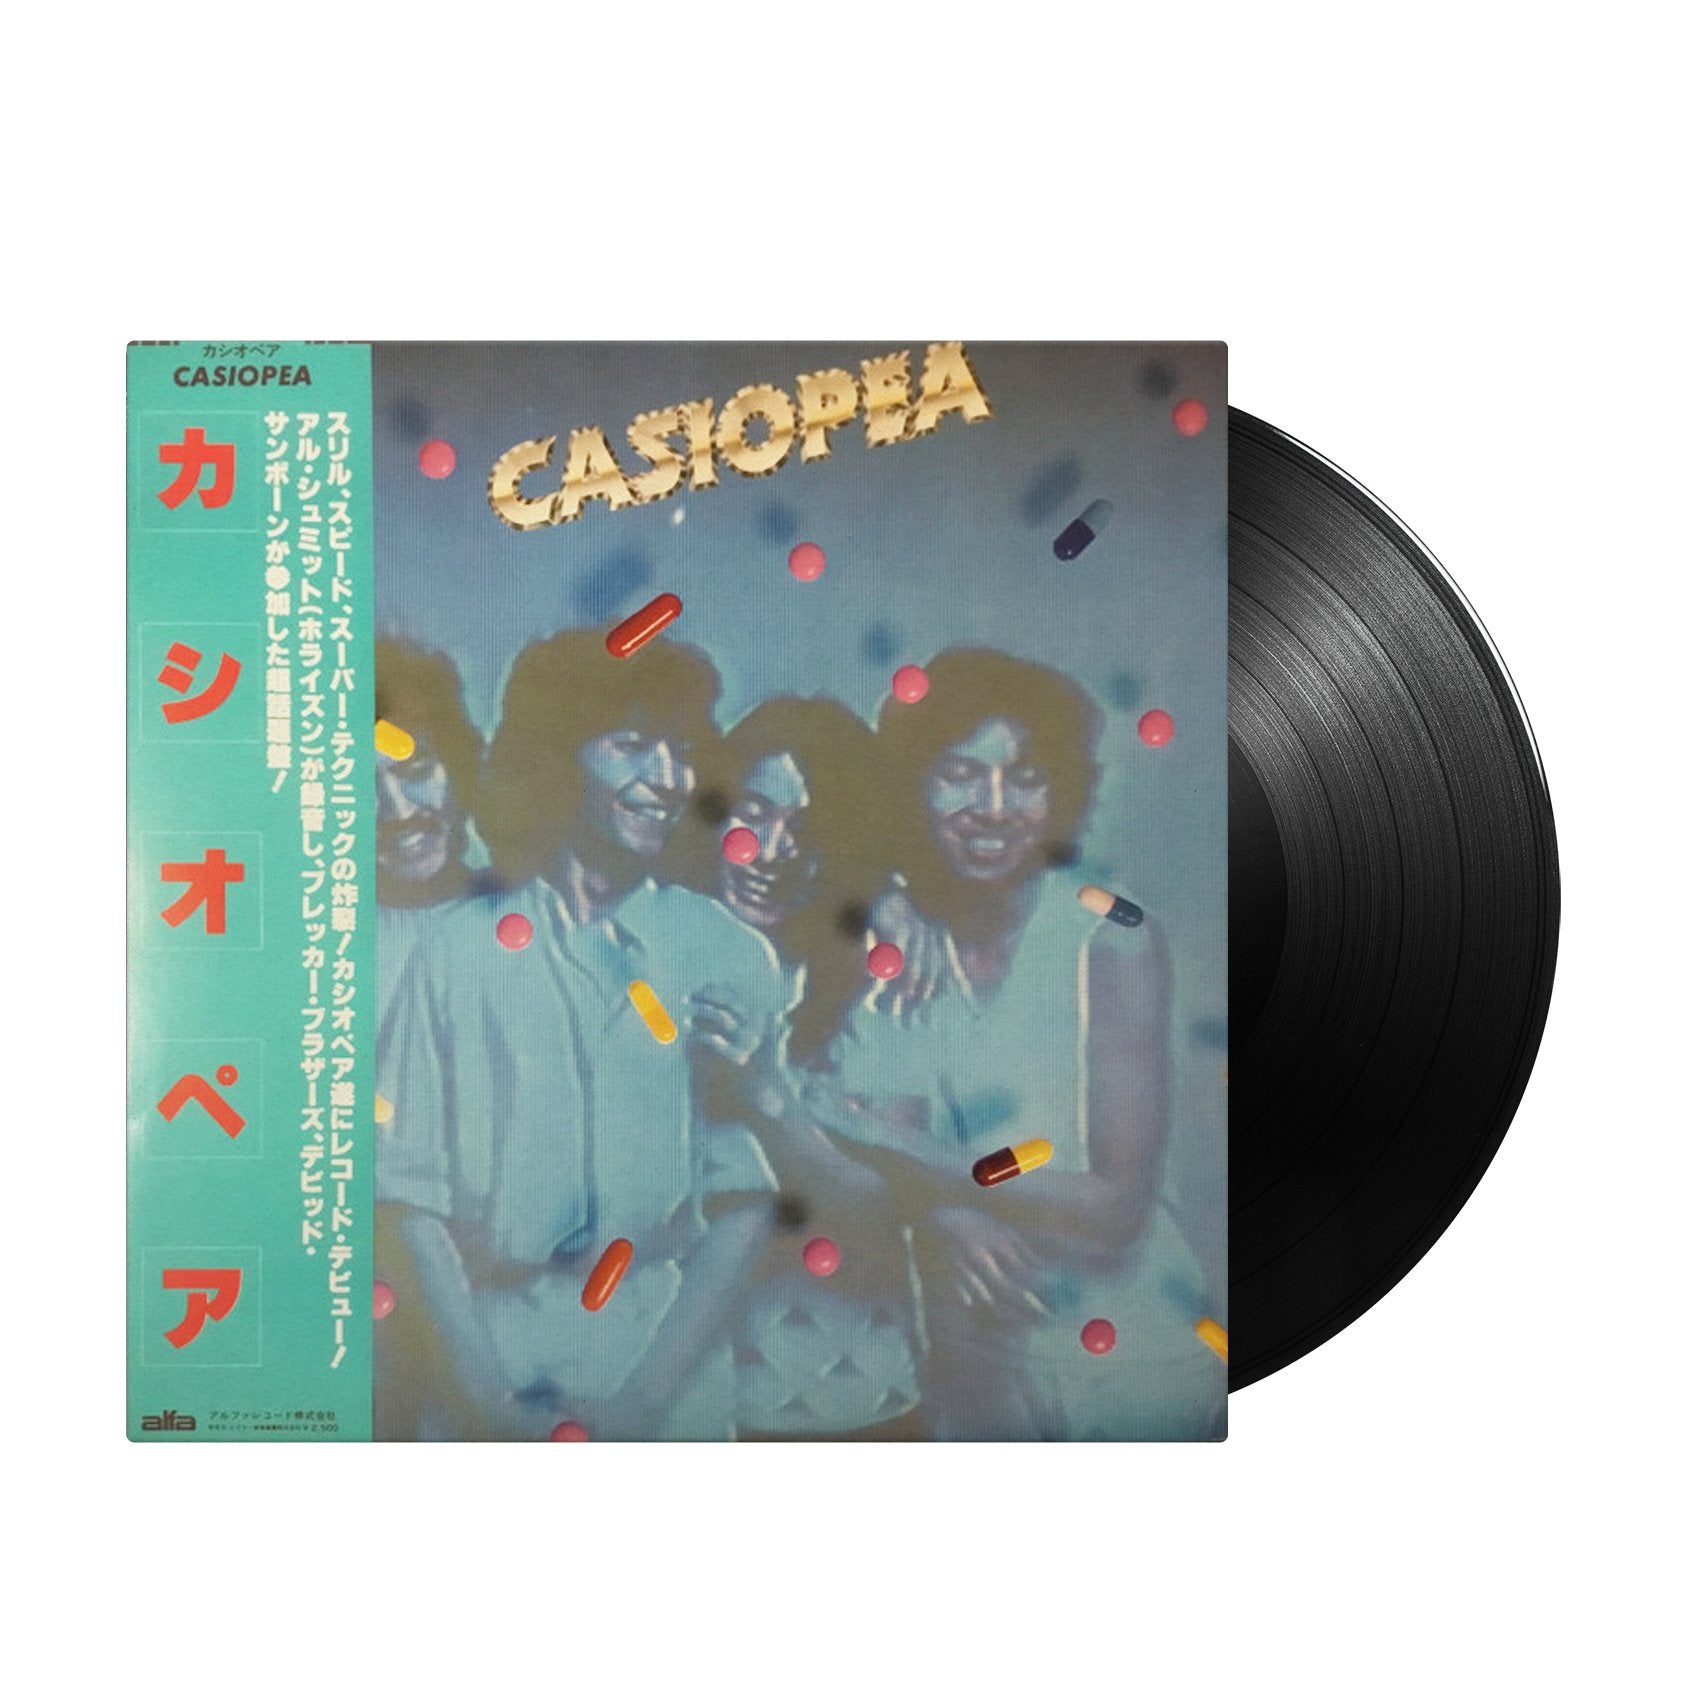 Casiopea - Casiopea (Japan Import) - Inner Ocean Records